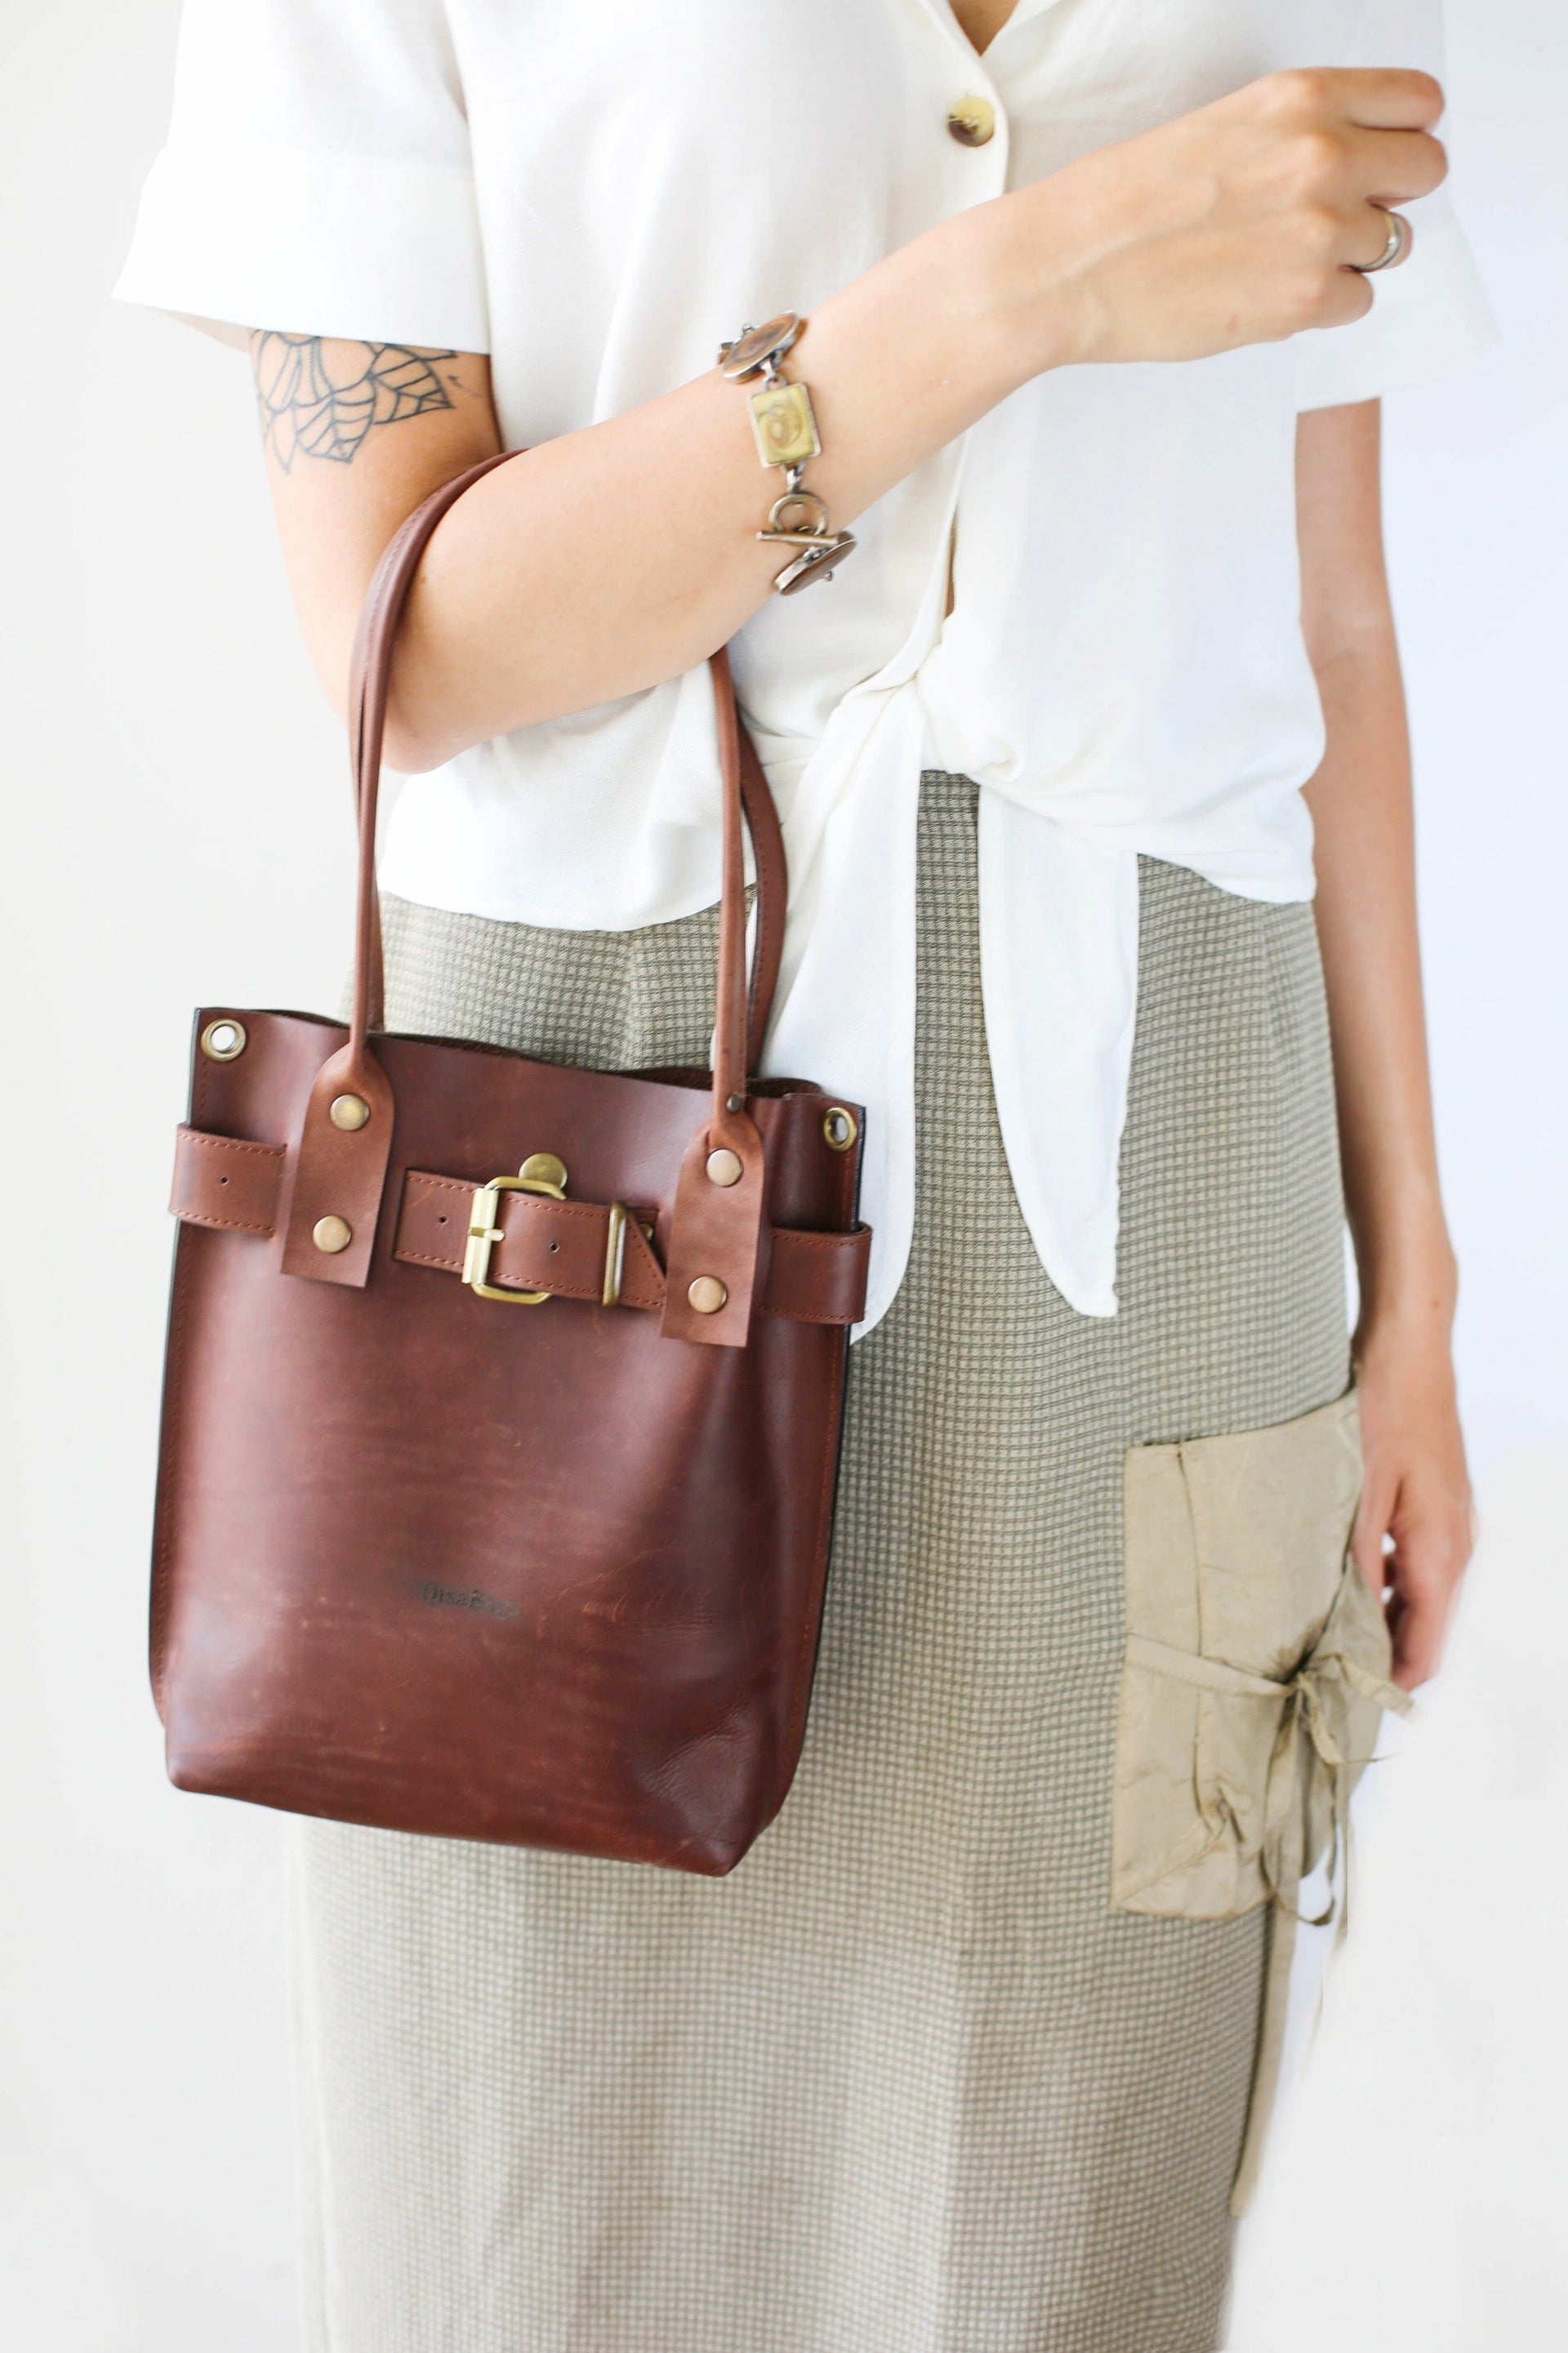 Stylish leather handbag